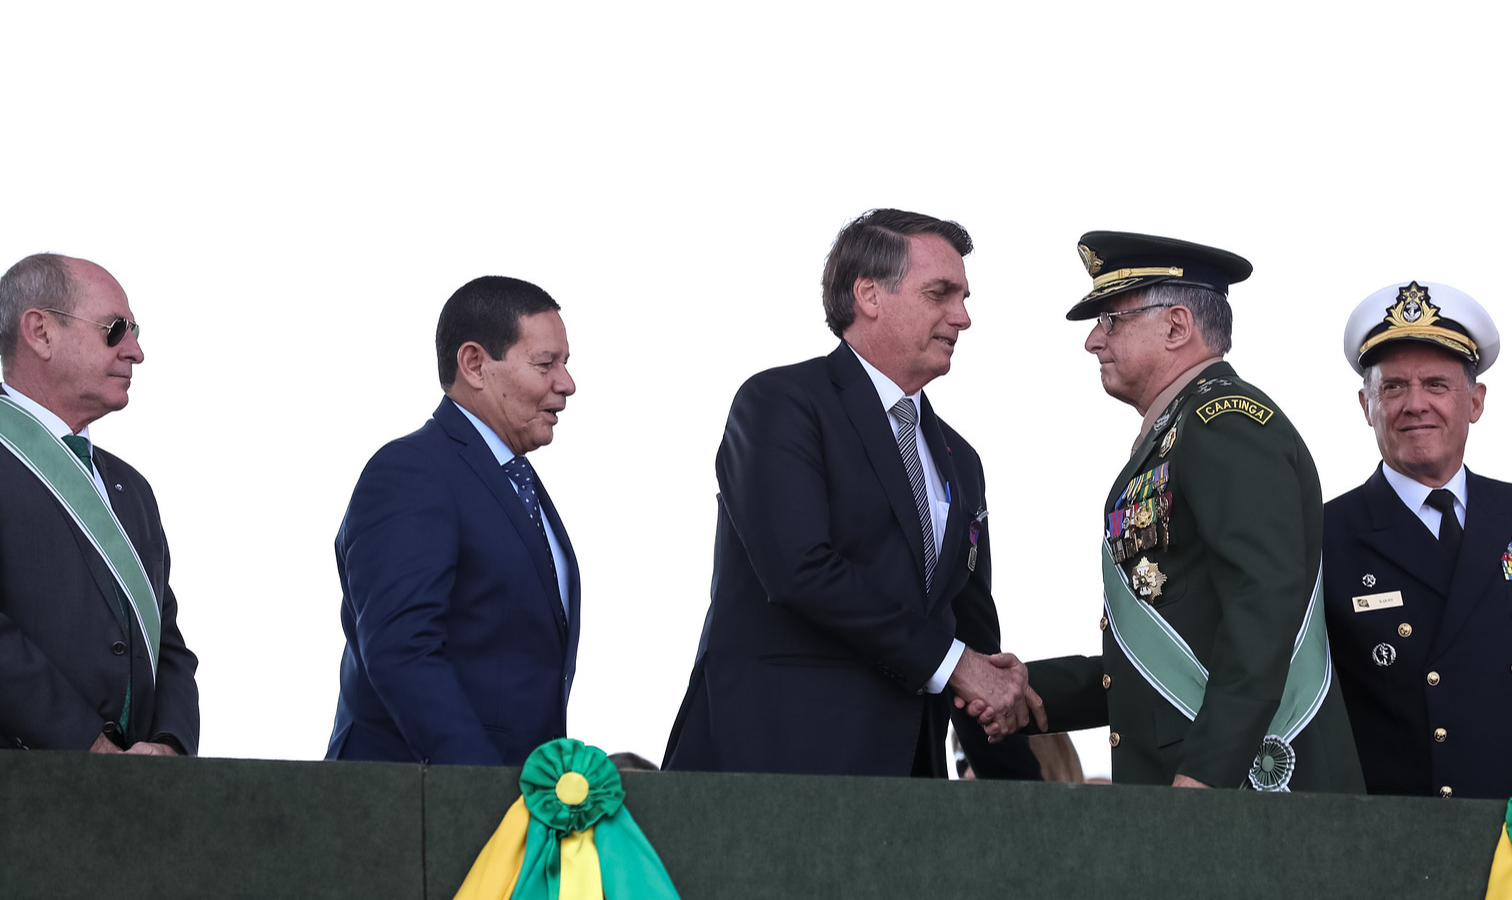 Estudo mapeou oficiais desde comando geral até regionais, detalhando com nomes e funções, além de políticos próximos a Bolsonaro